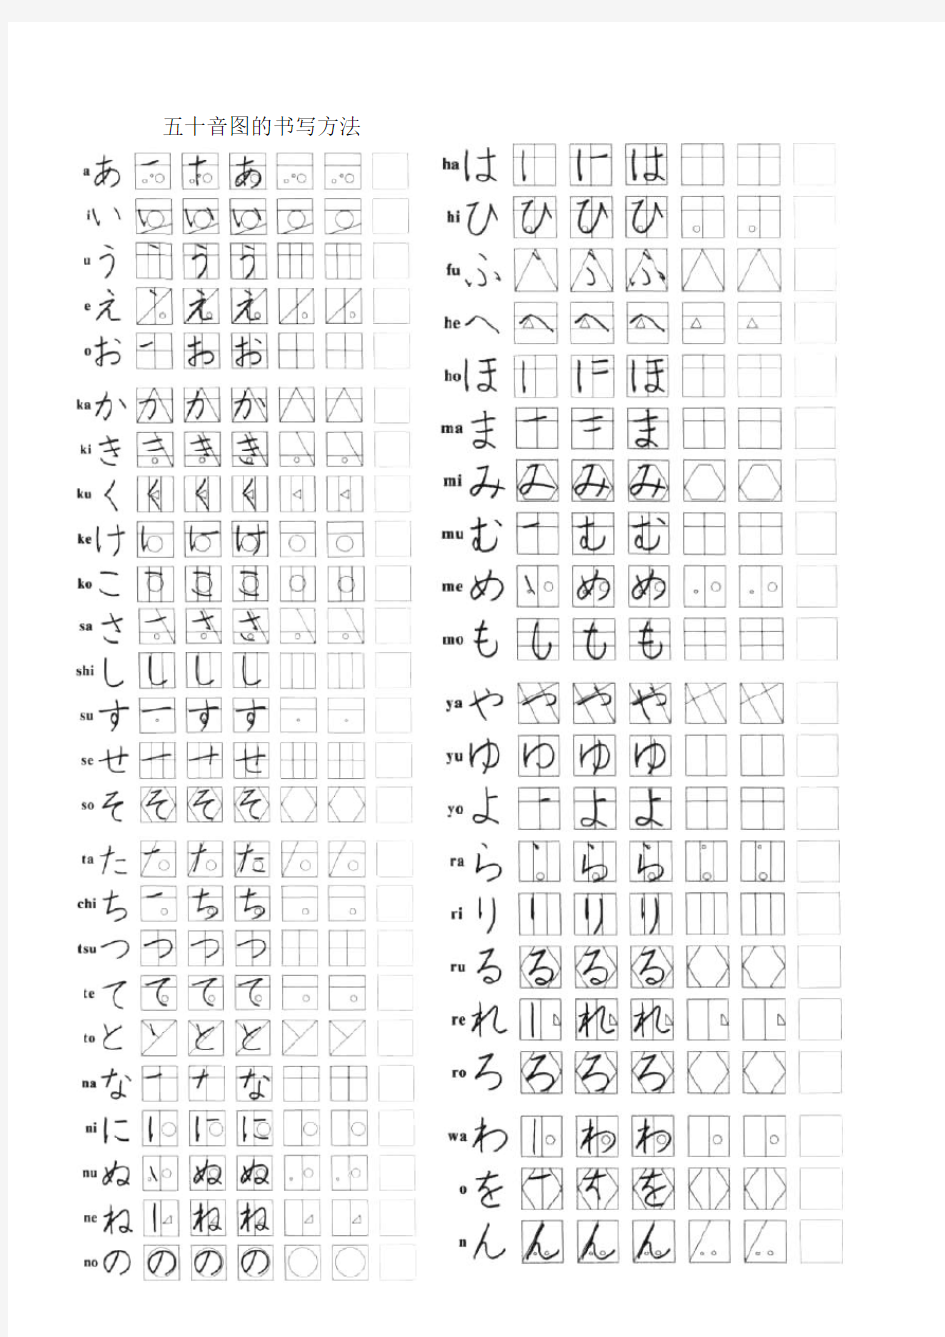 日语五十音图(清晰打印版)